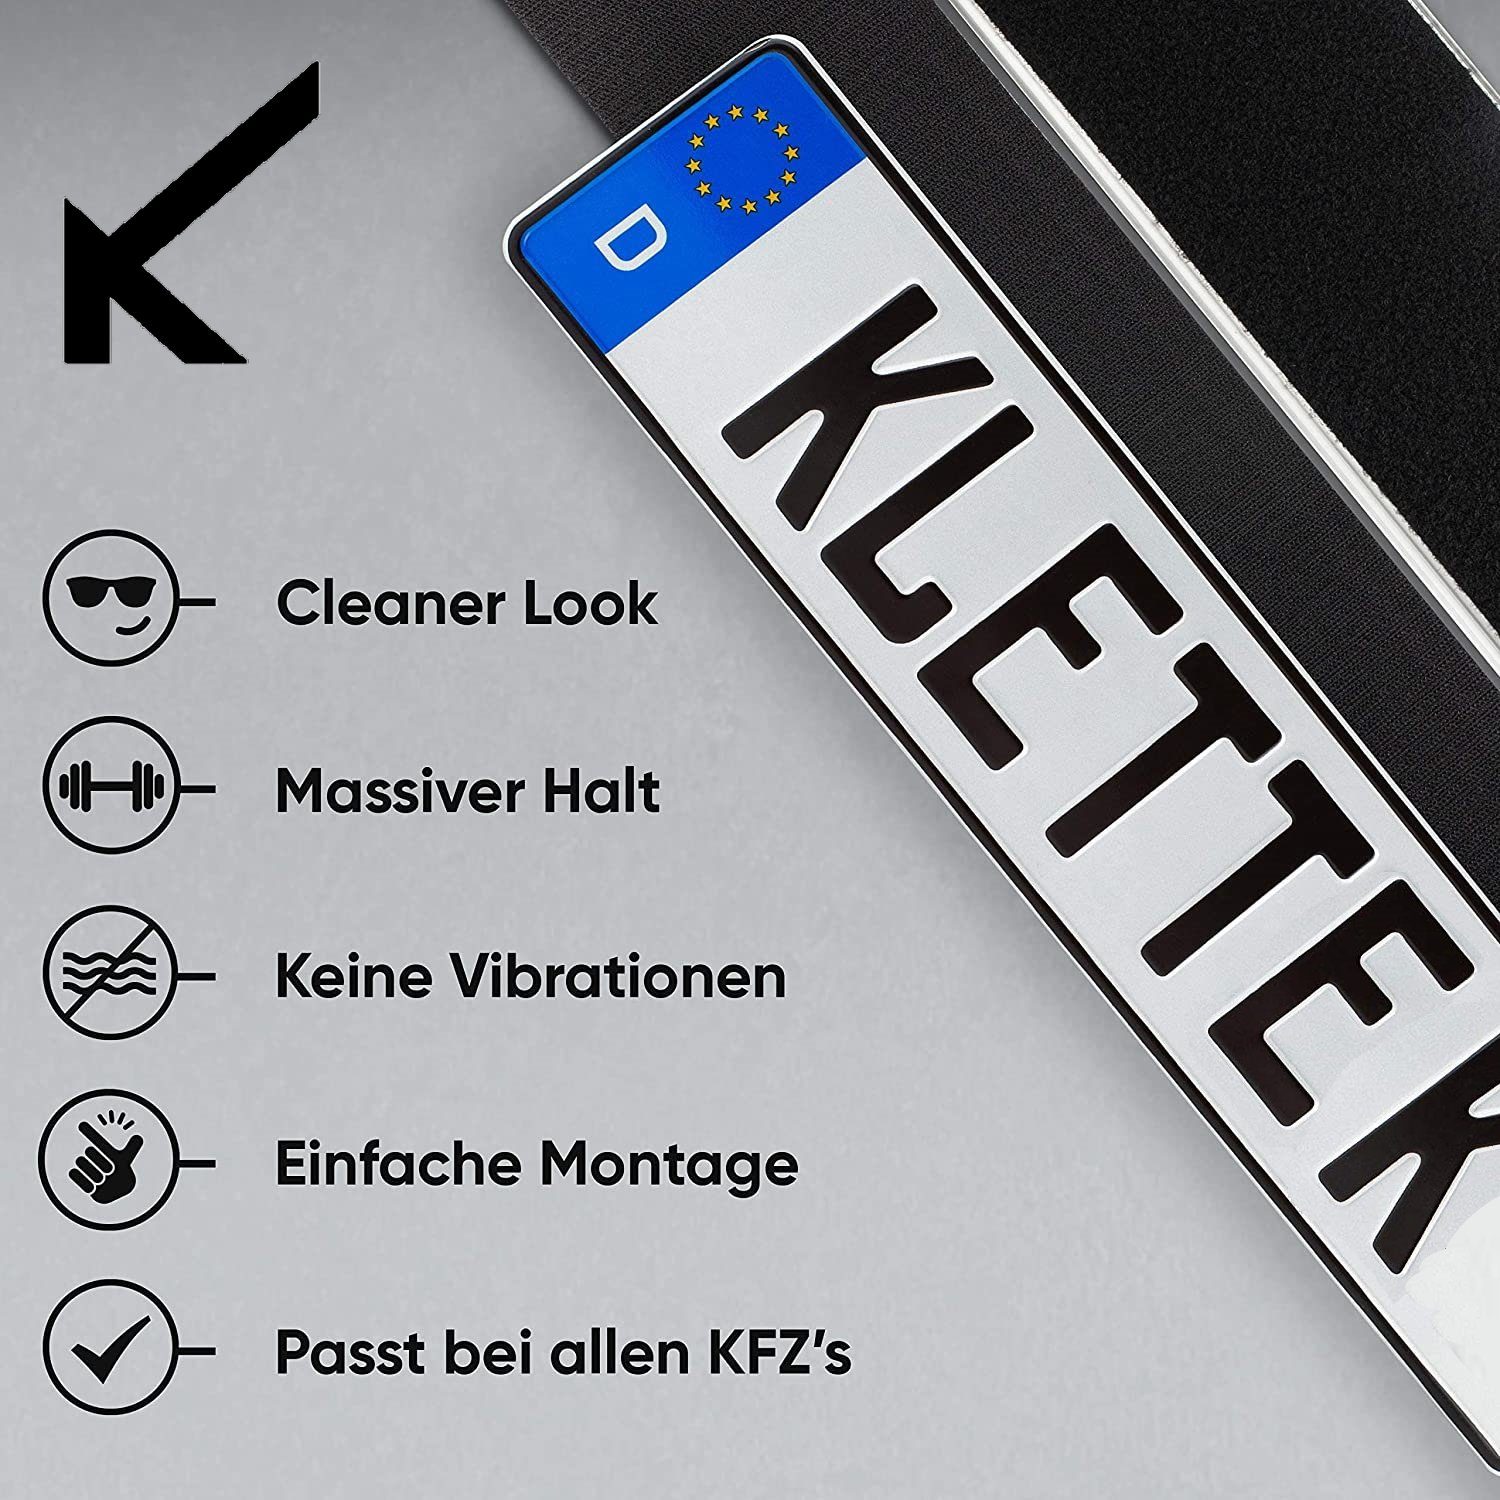 Simple Fix 2x Rahmenlos KFZ Kennzeichenhalter Nummernschildhalter  rahmenlose set